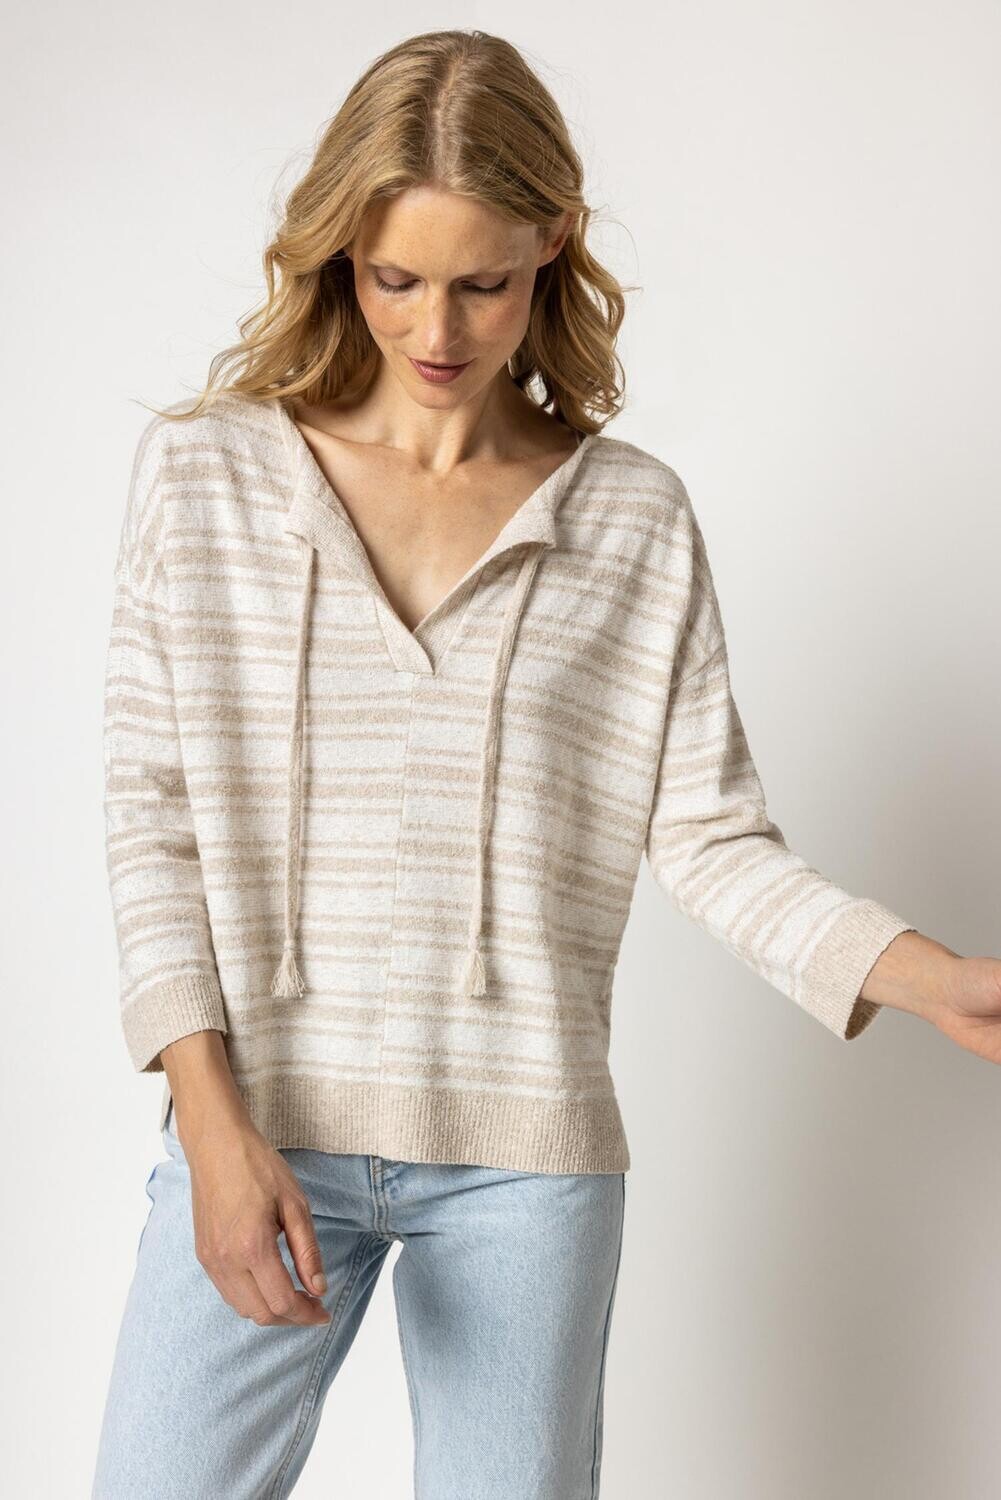 Lilla P Easy Split Neck Sweater in Flax Stripe